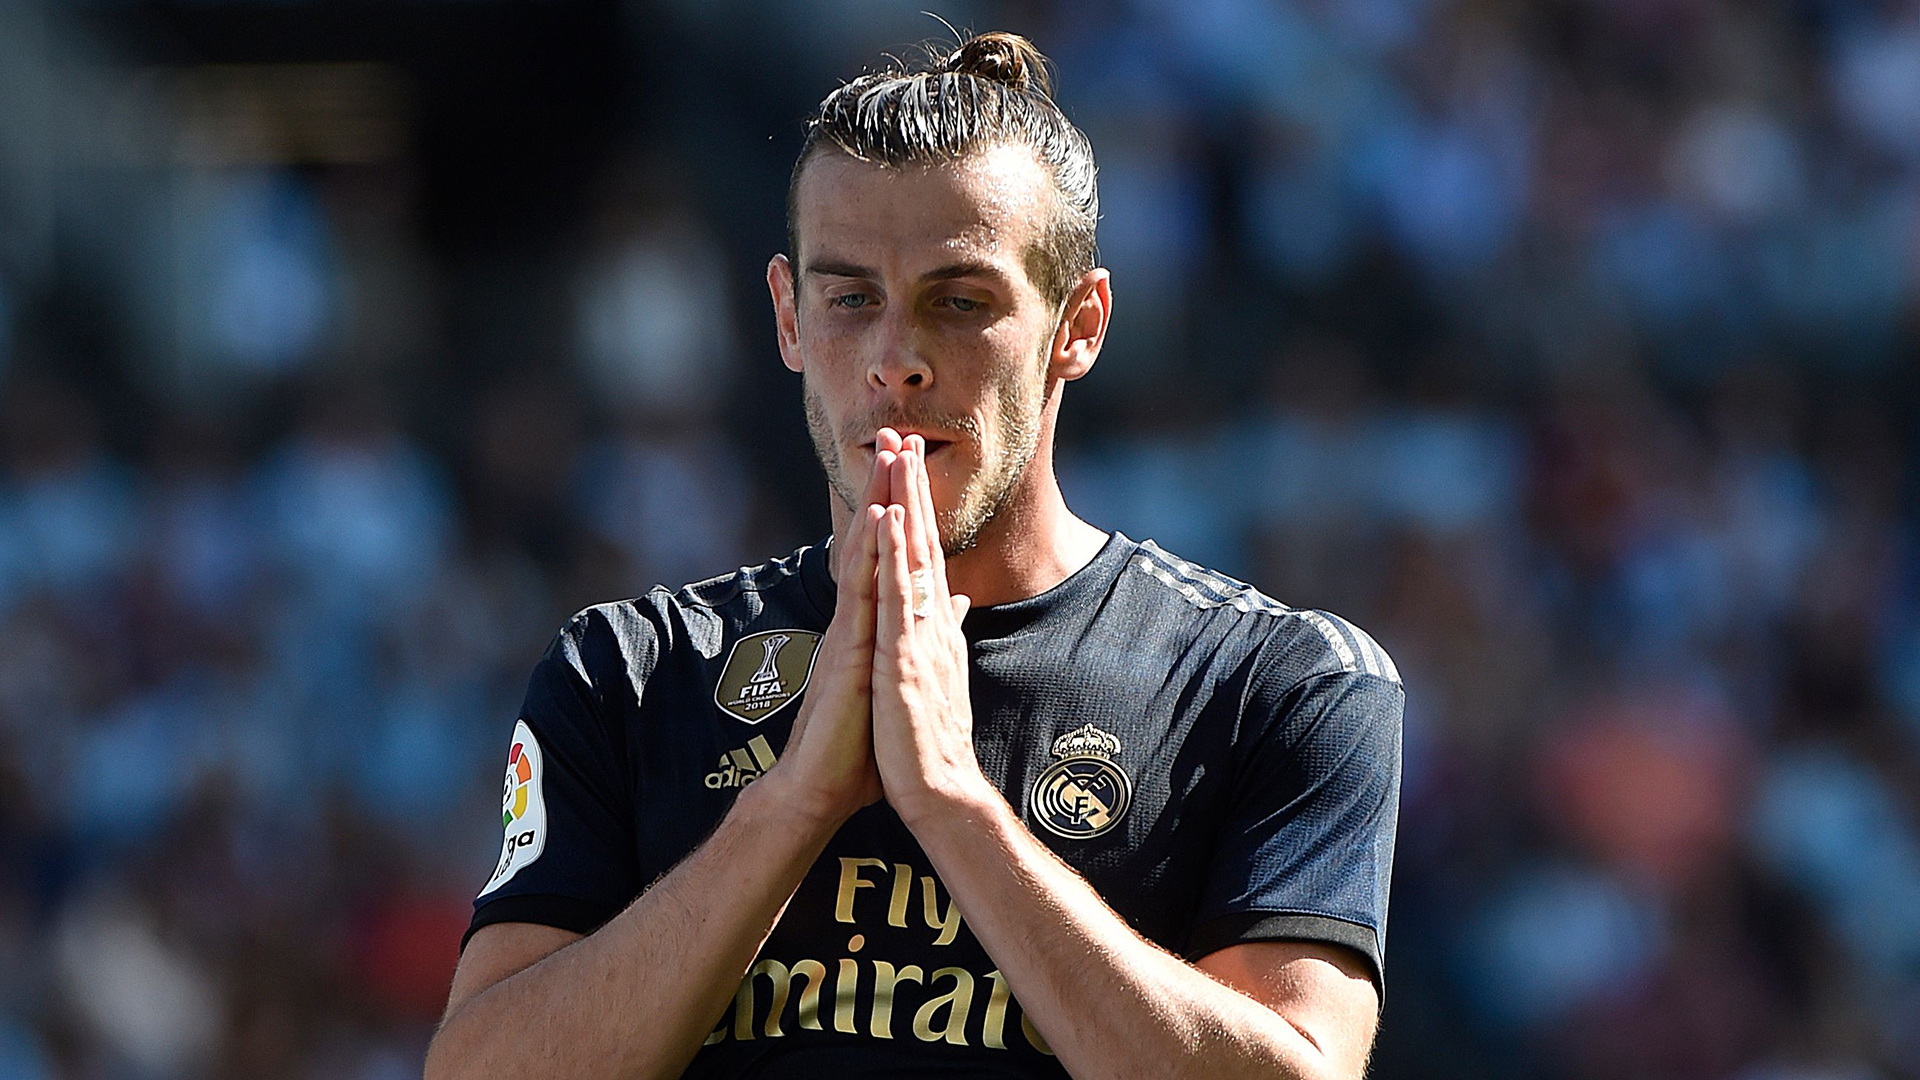 C’est révélé, Man City aurait pu signer Bale avant Sané et Bernardo Silva